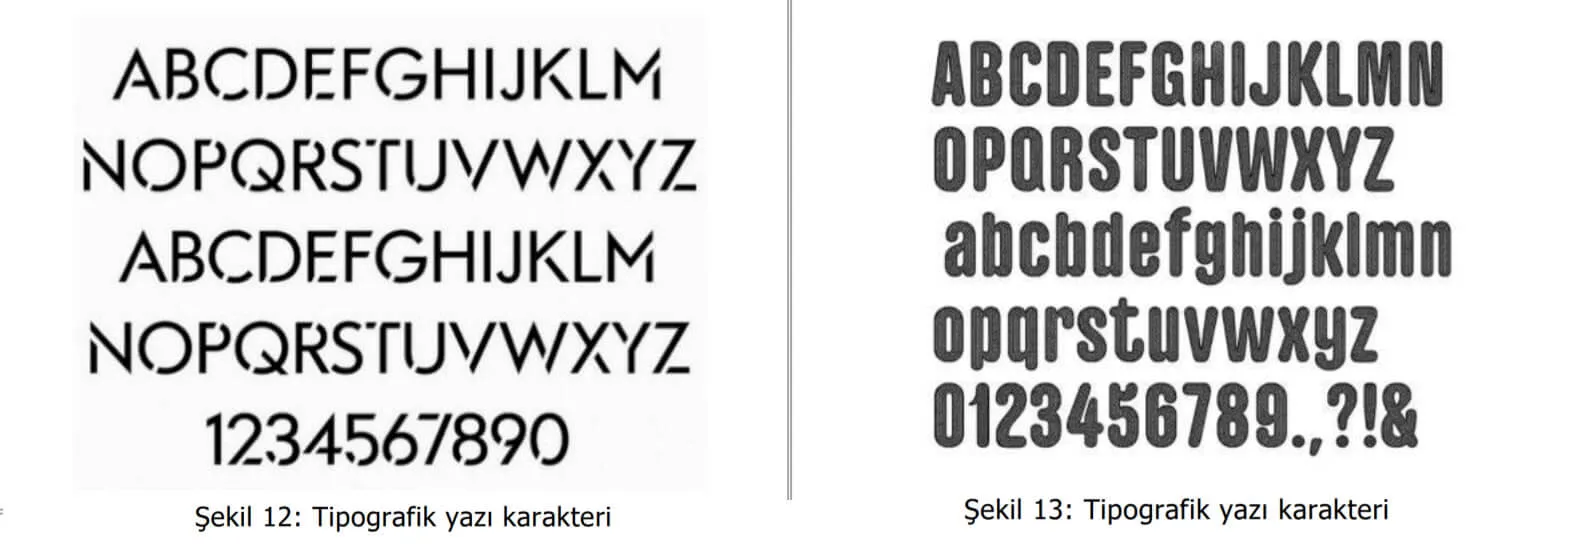 tipografik yazı karakter örnekleri-beşiktaş web tasarım